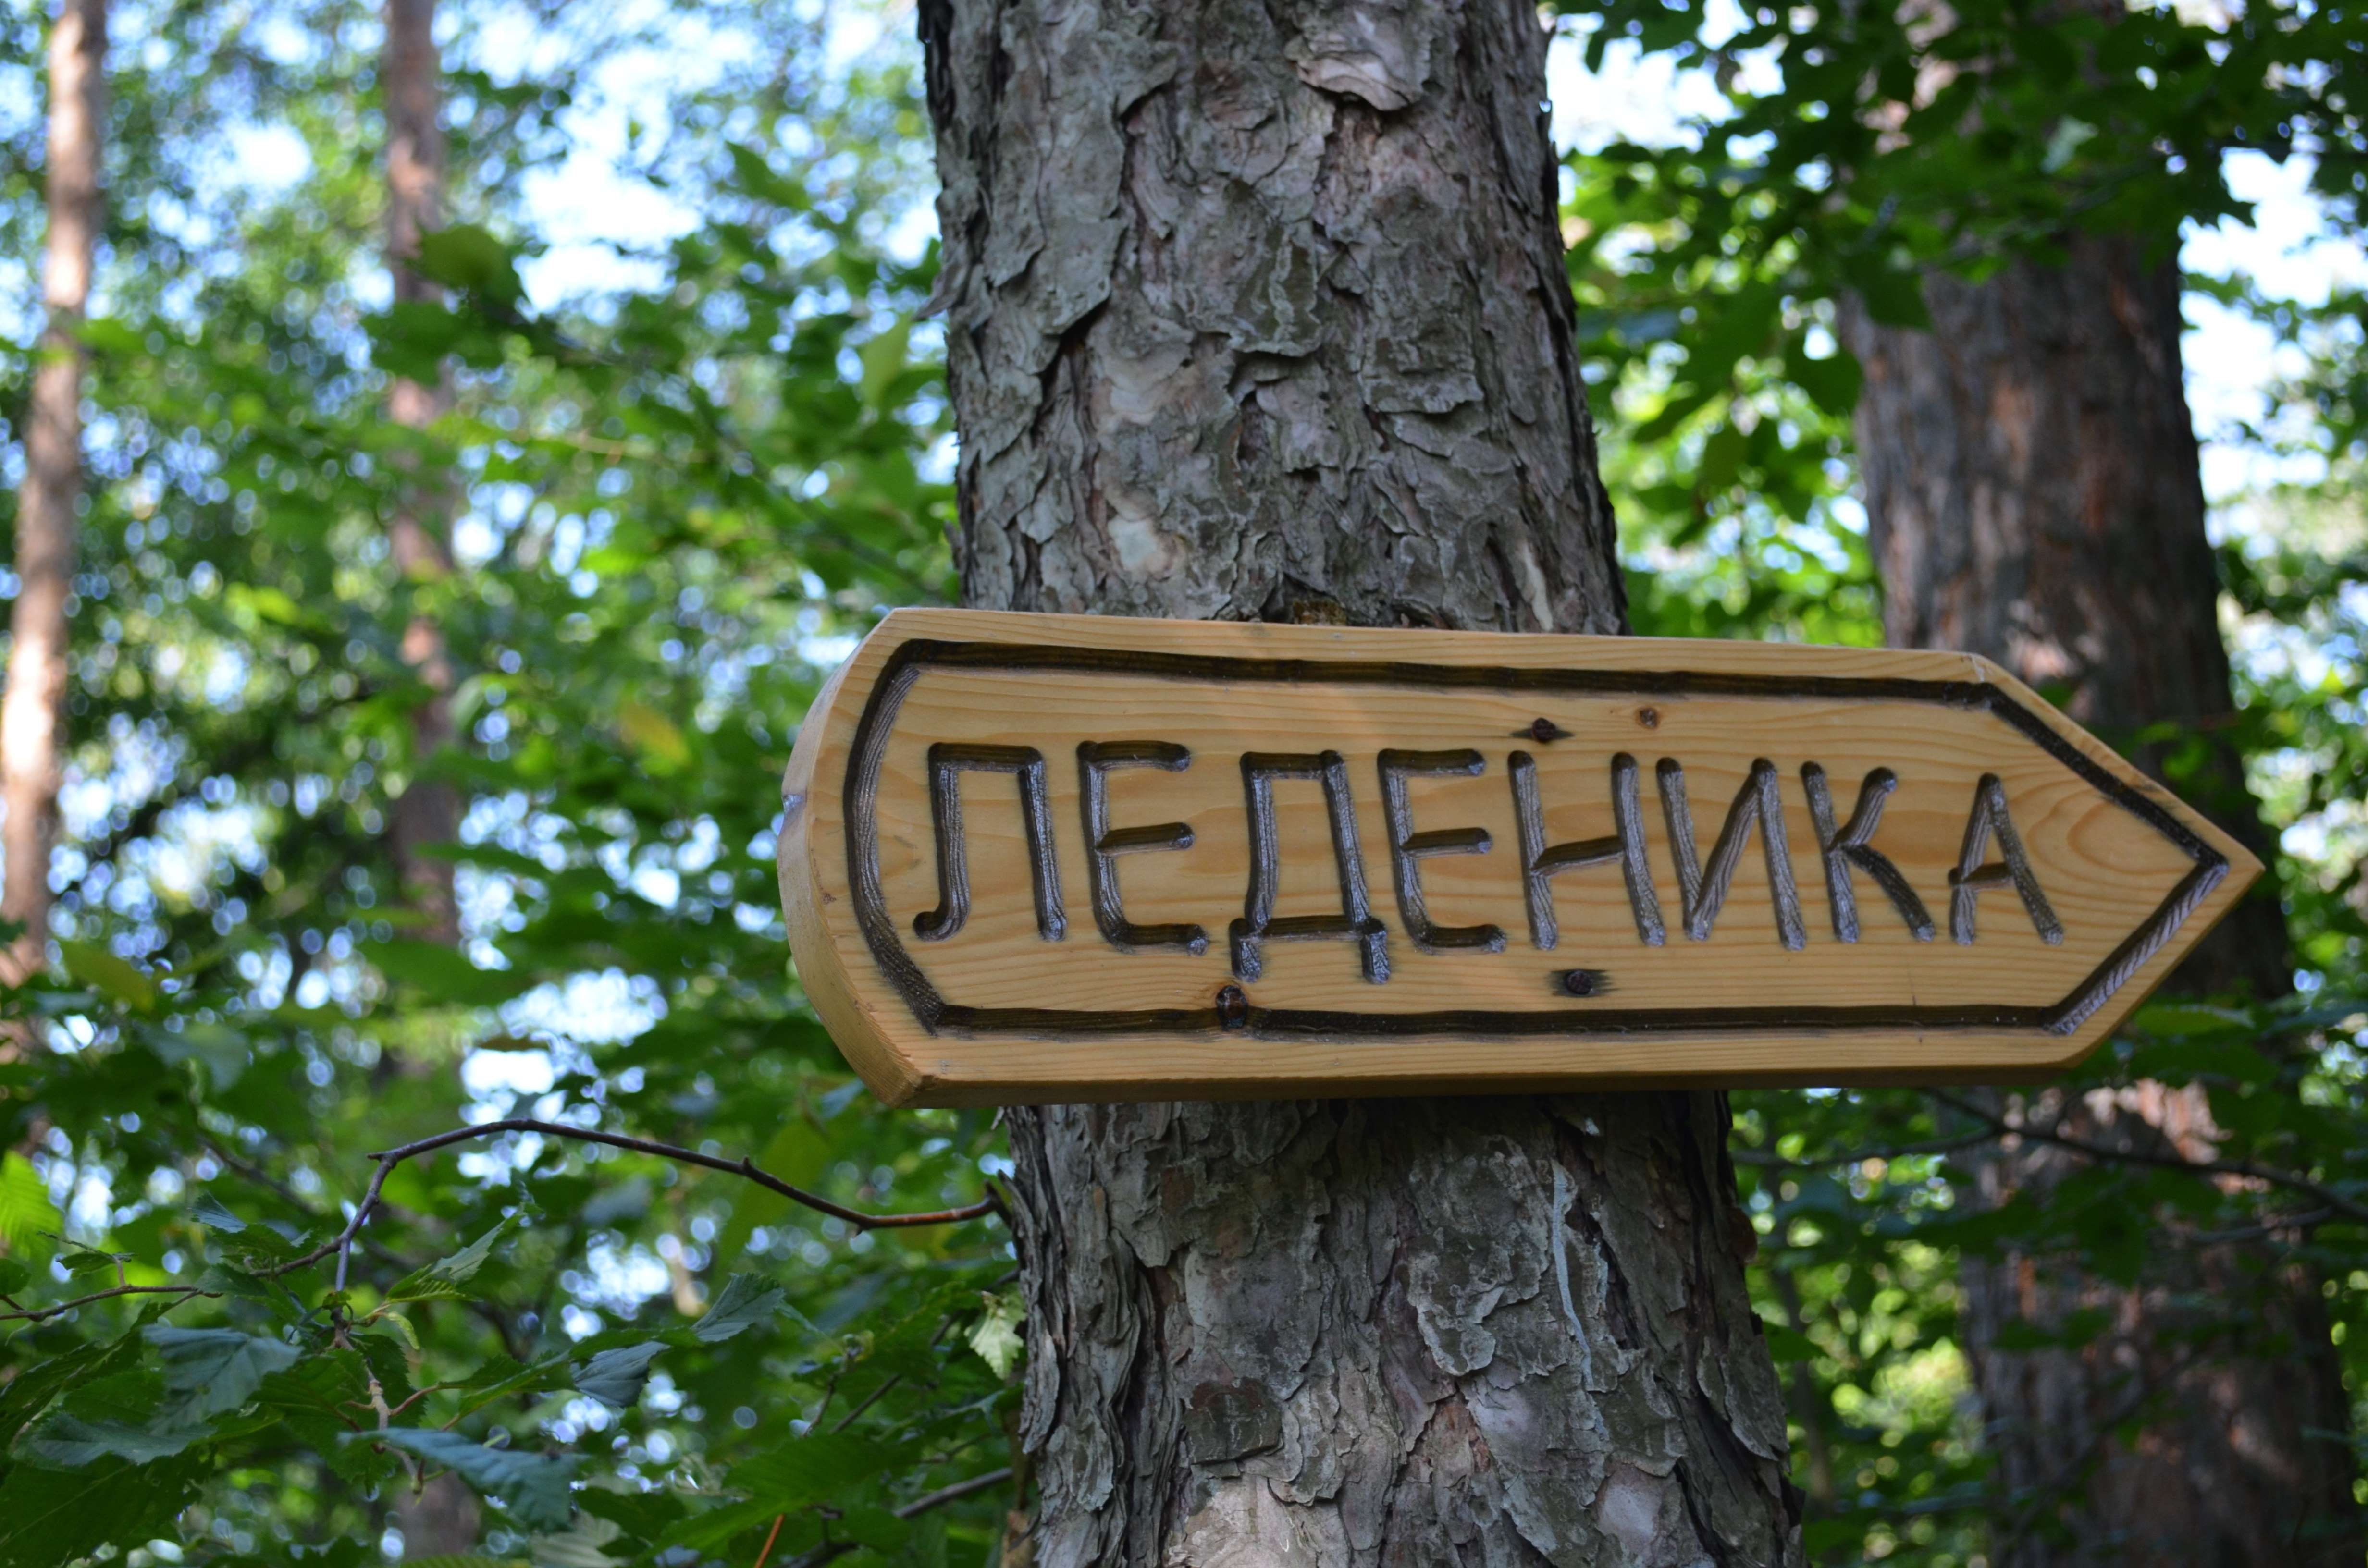 neaehnka signage